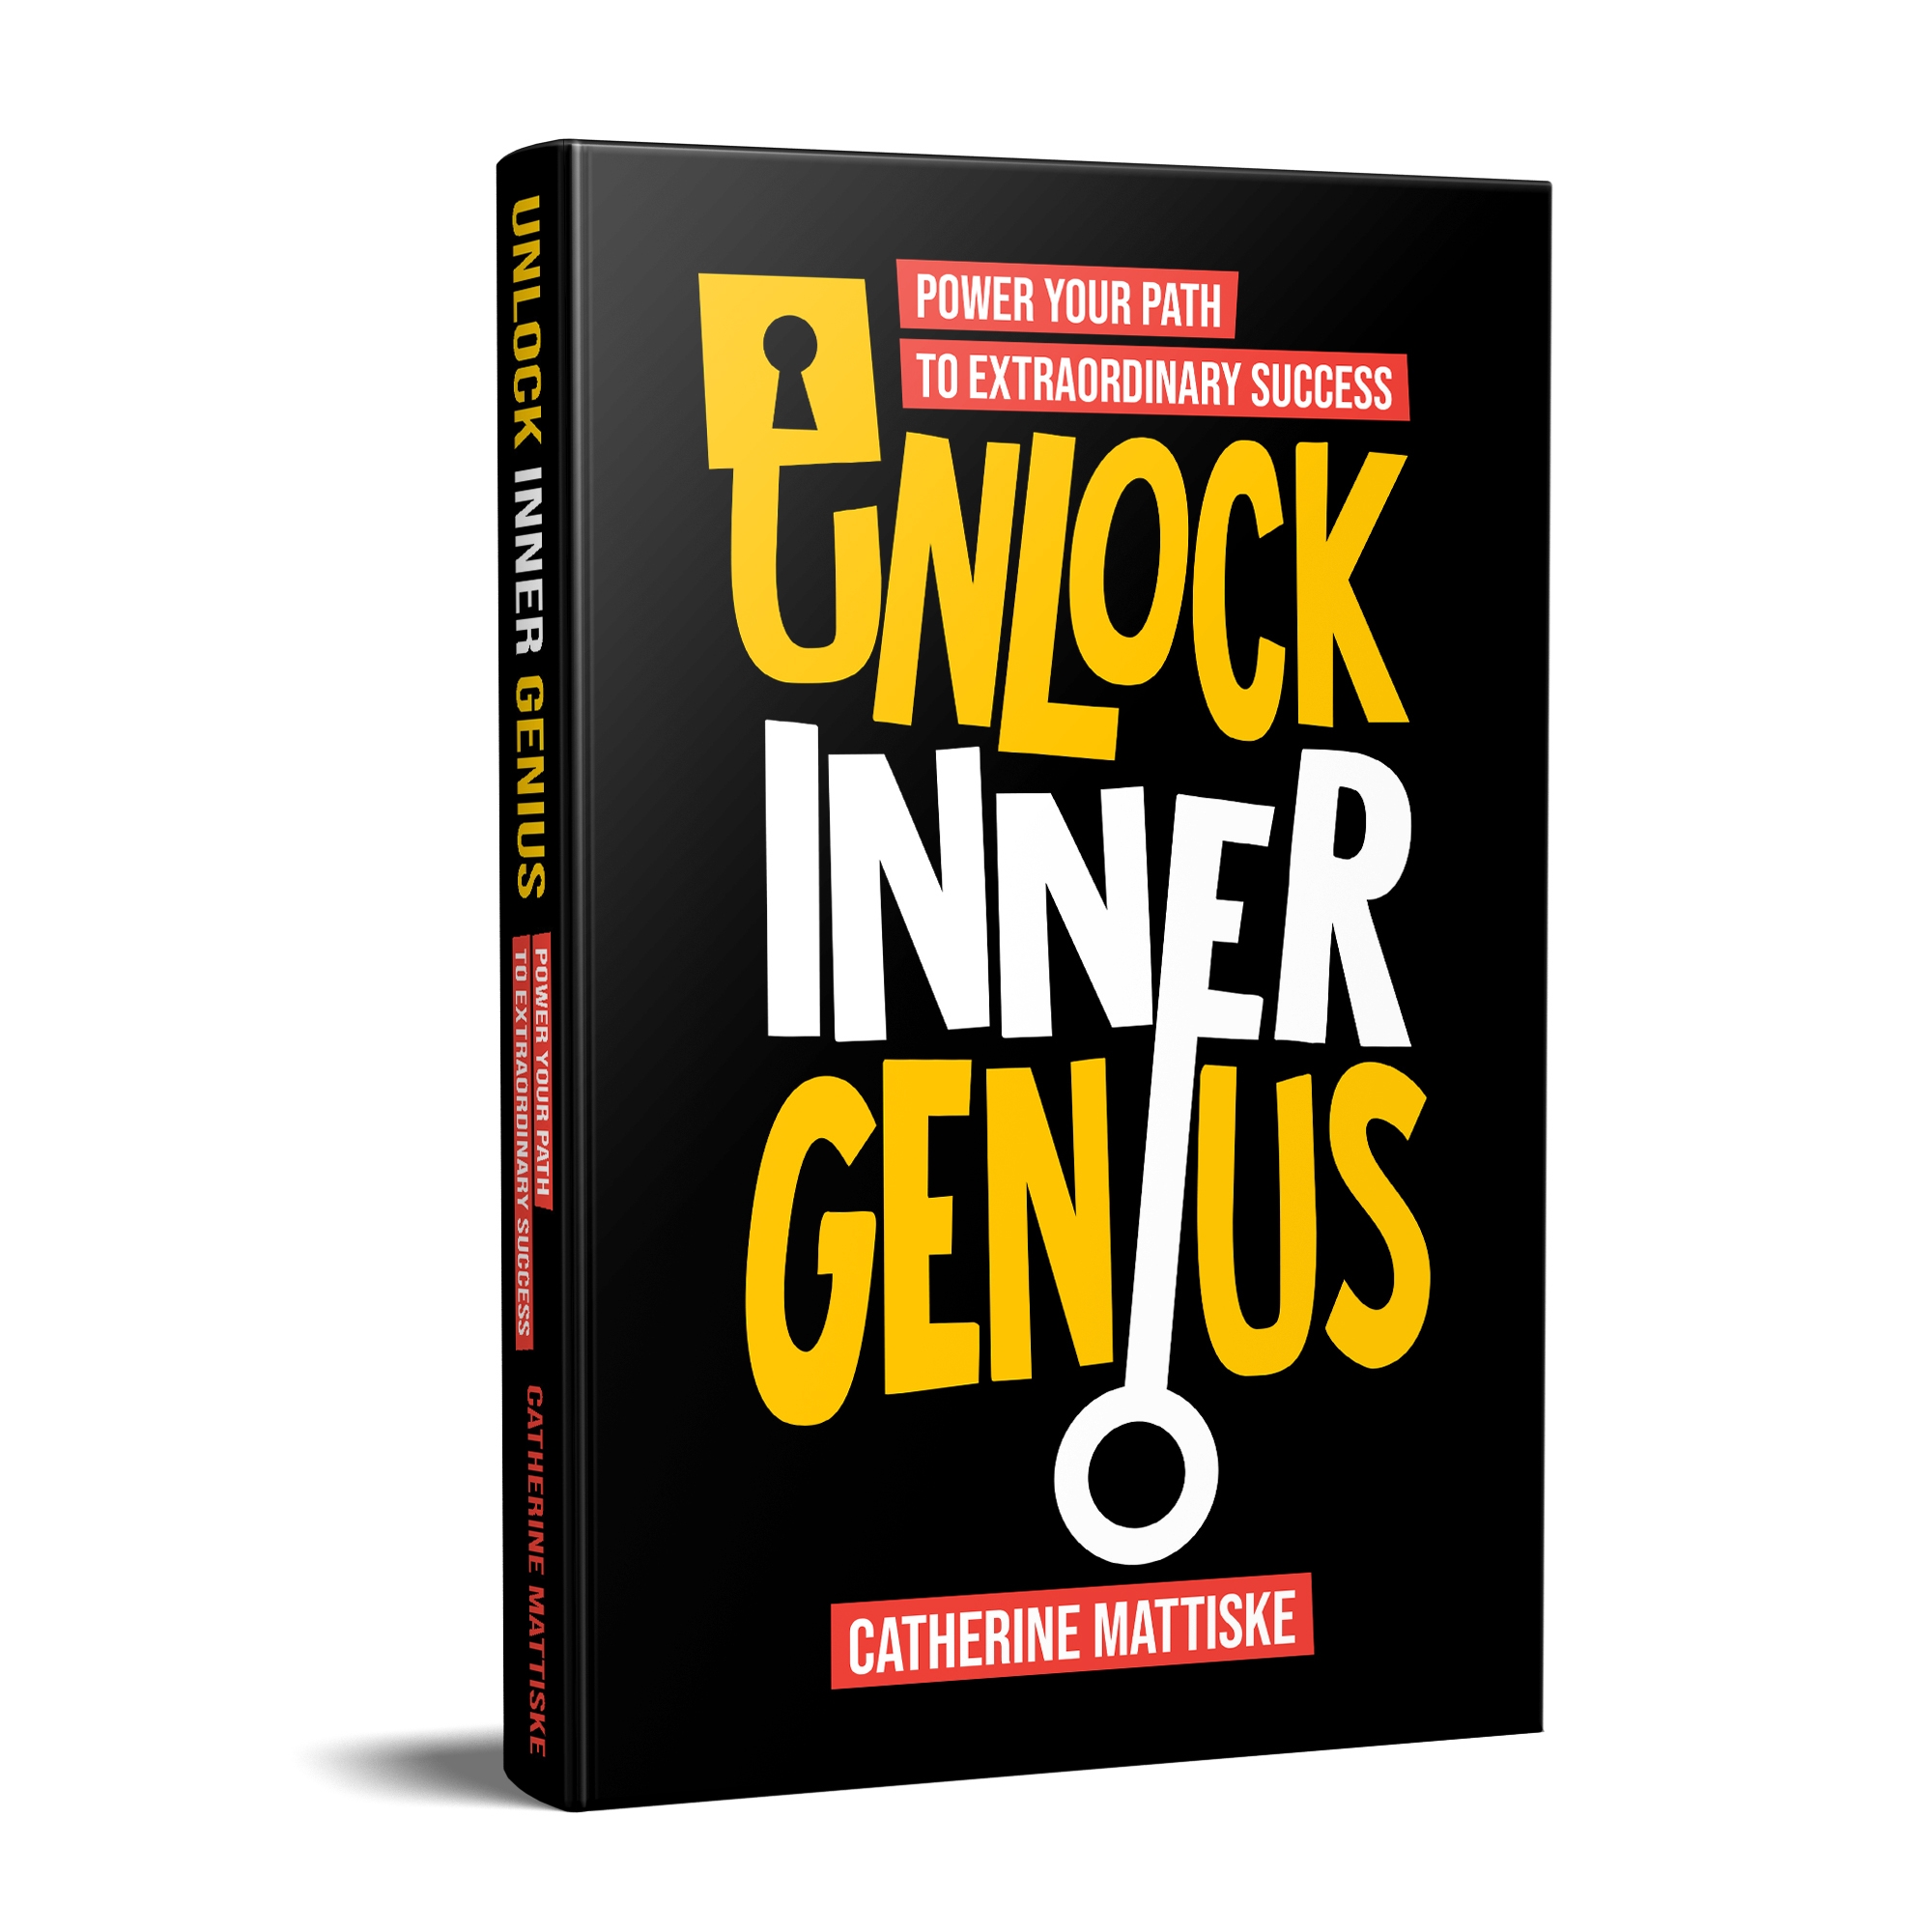 604 unlock inner genius 01 wjiua